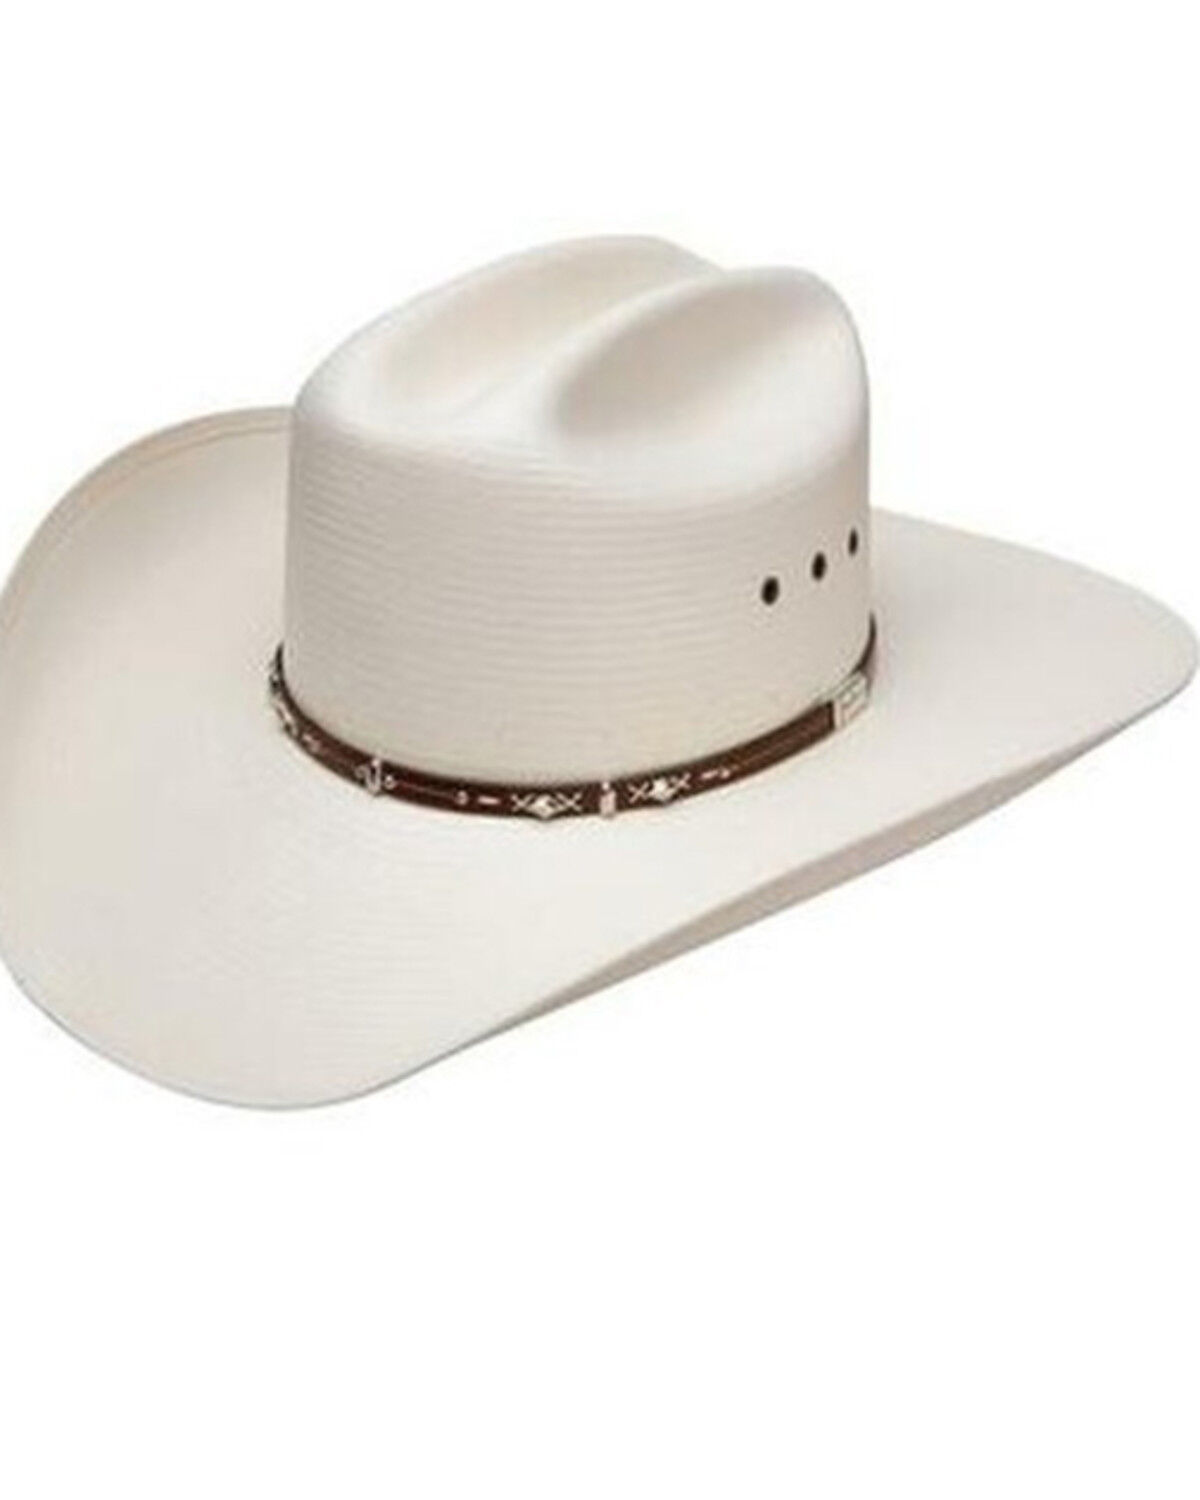 Western Cattleman Straw Cowboy Hat for Men 